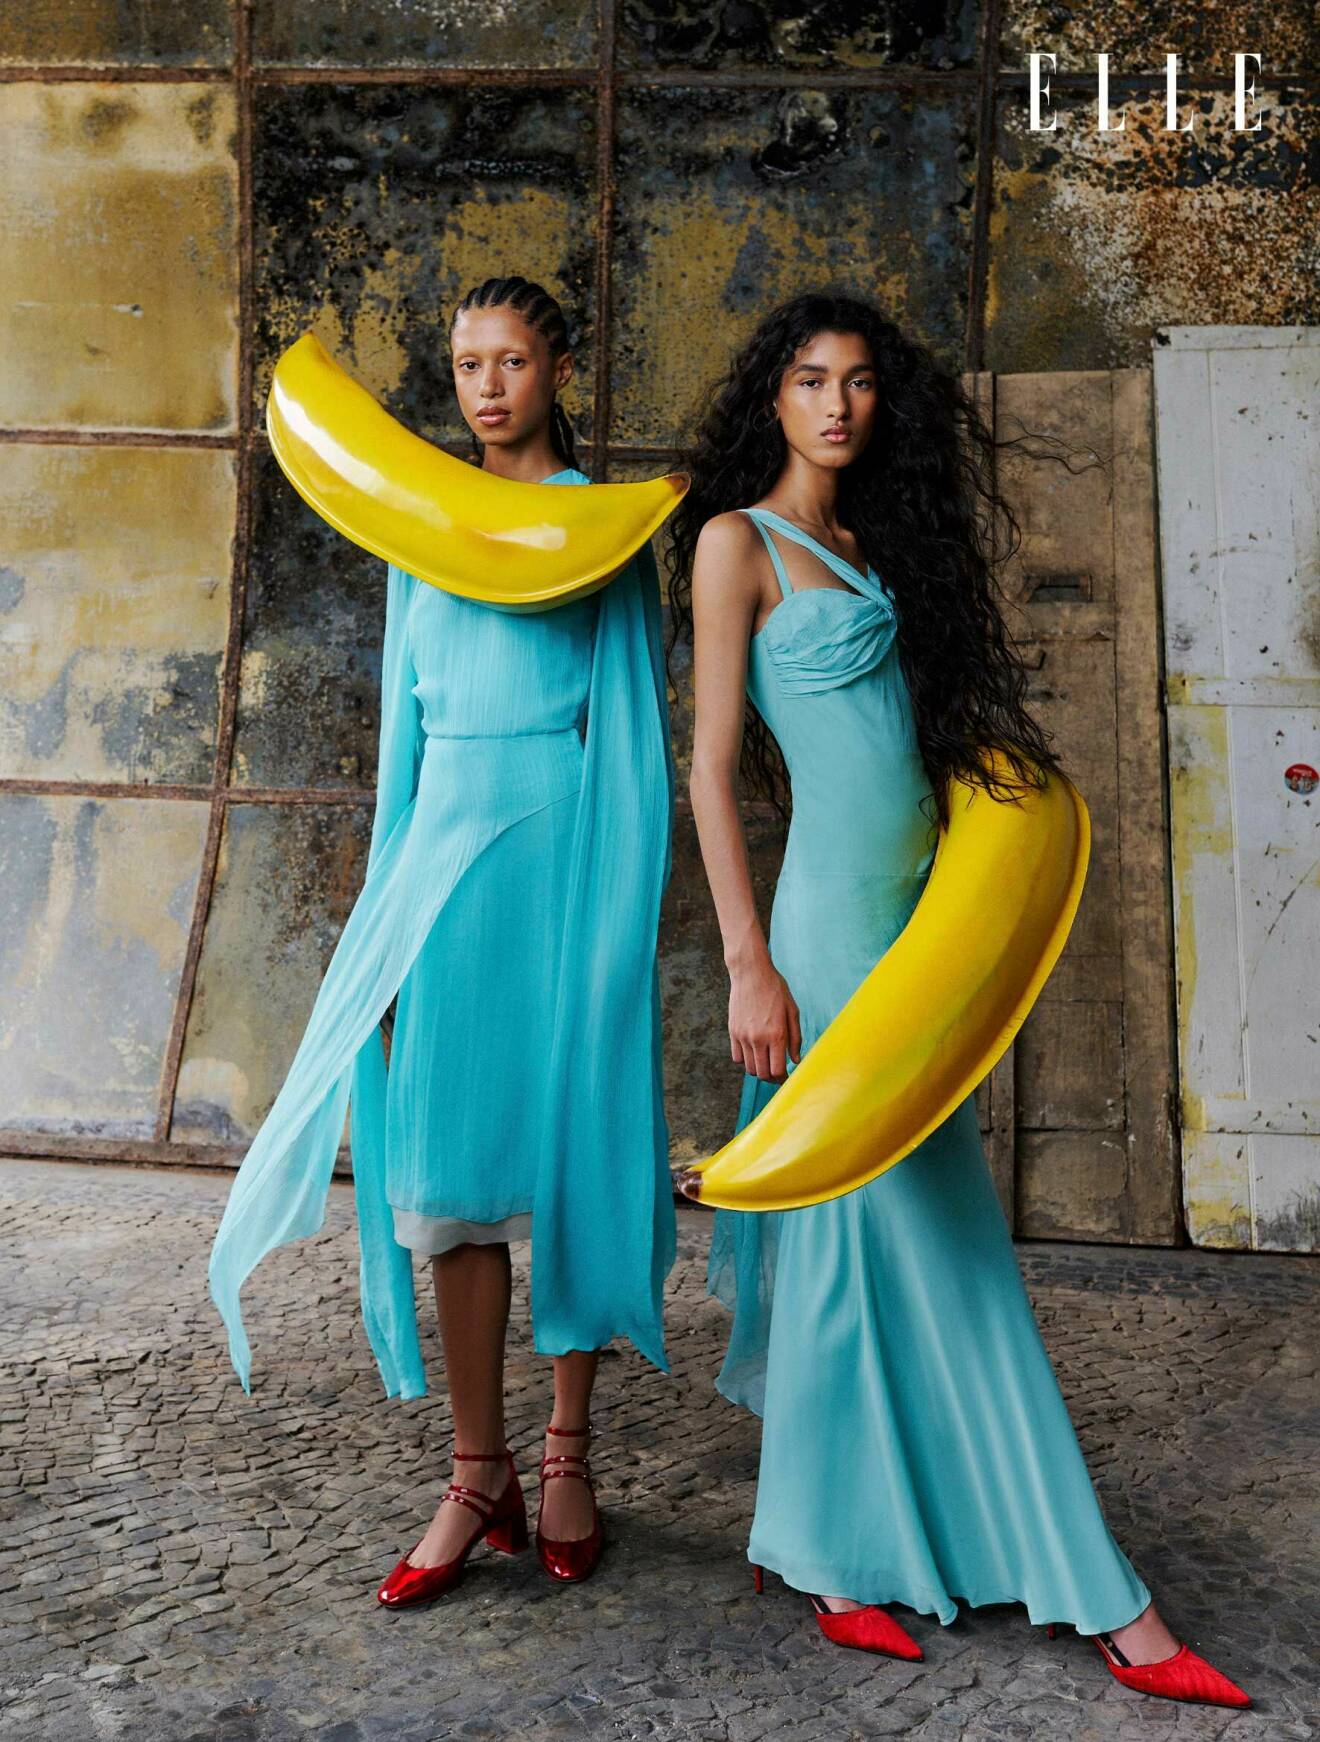 Modellen till vänster har på sig en långärmad turkos klänning från Fendi och modellen till höger har på sig en turkos långklänning från Christian Dior/Etiqueta Única